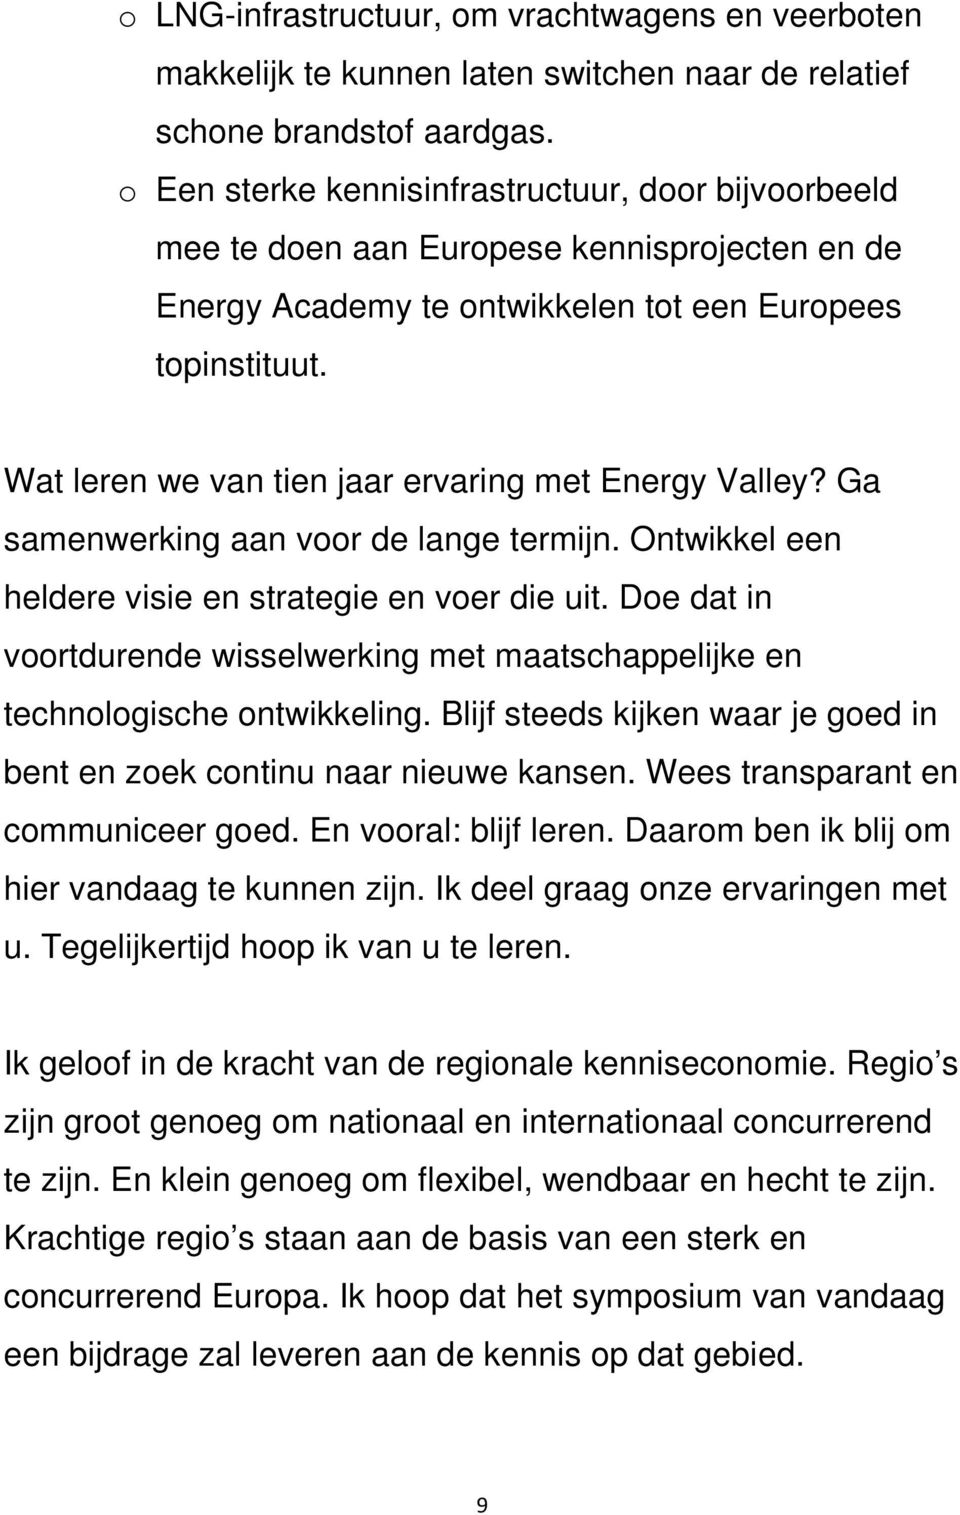 Wat leren we van tien jaar ervaring met Energy Valley? Ga samenwerking aan voor de lange termijn. Ontwikkel een heldere visie en strategie en voer die uit.